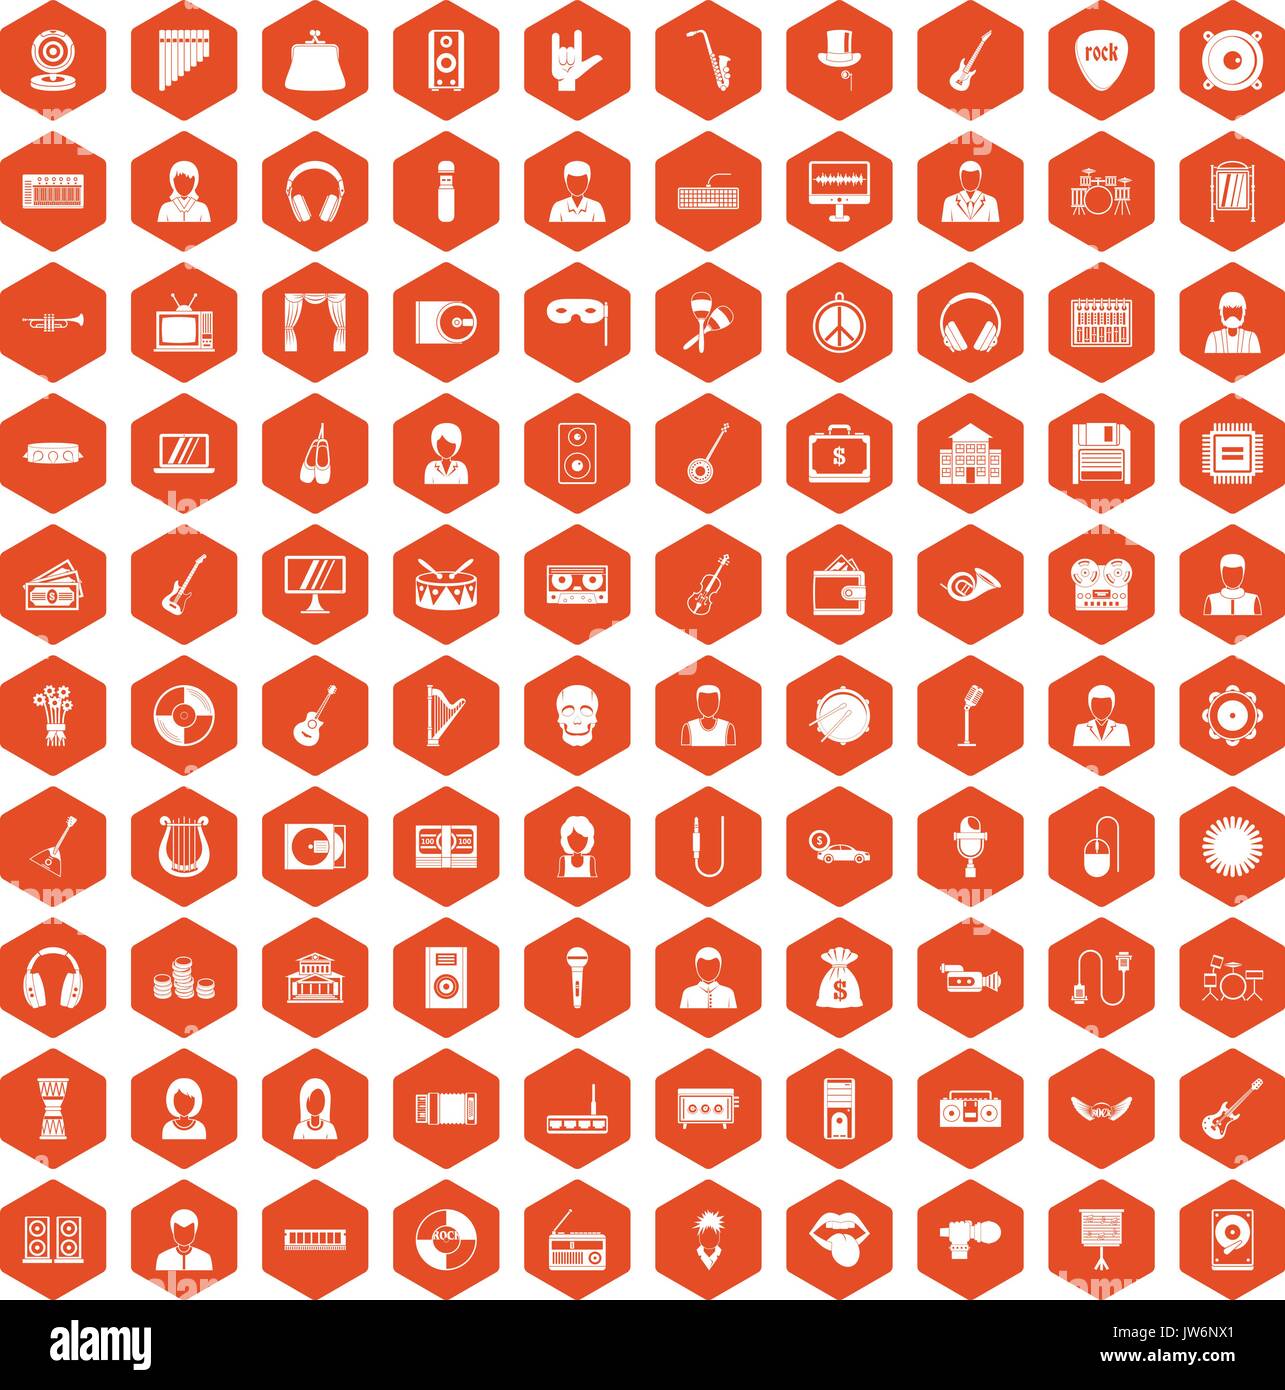 100 music icons hexagon orange Stock Vector